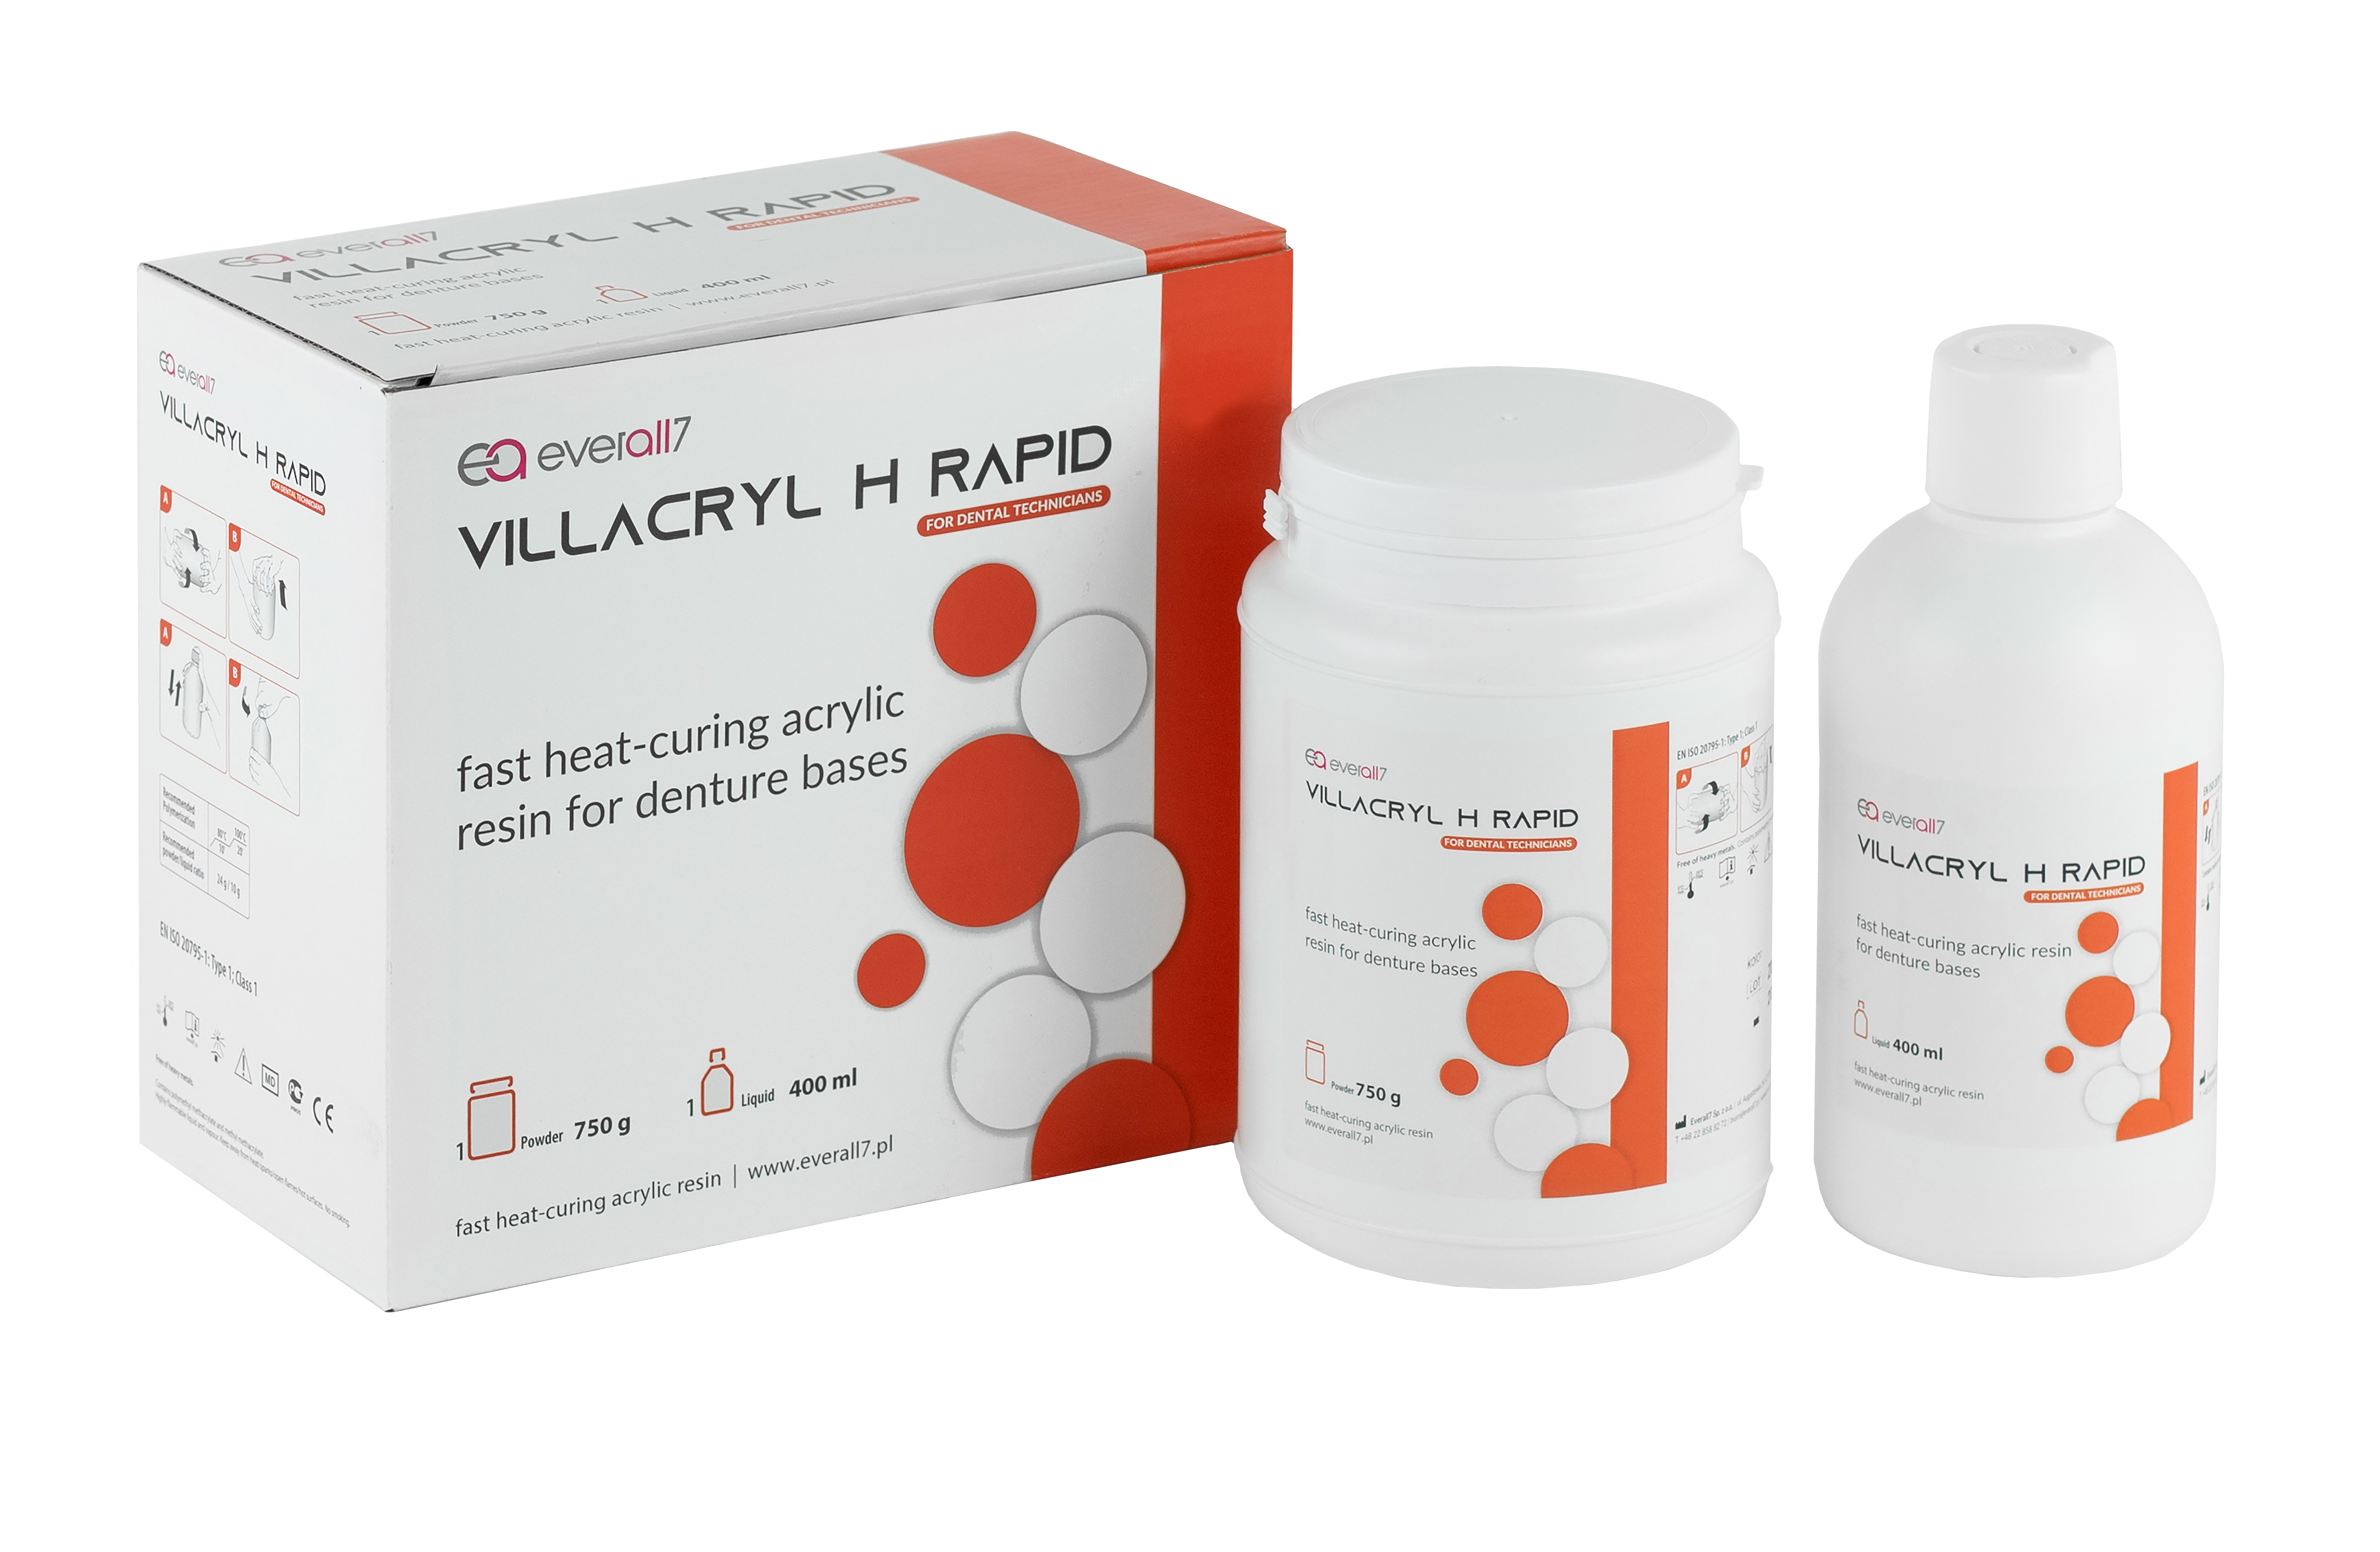 Everall7 – Villacryl H Rapid – hőre keményedő akrilát gyors polimerizációhoz